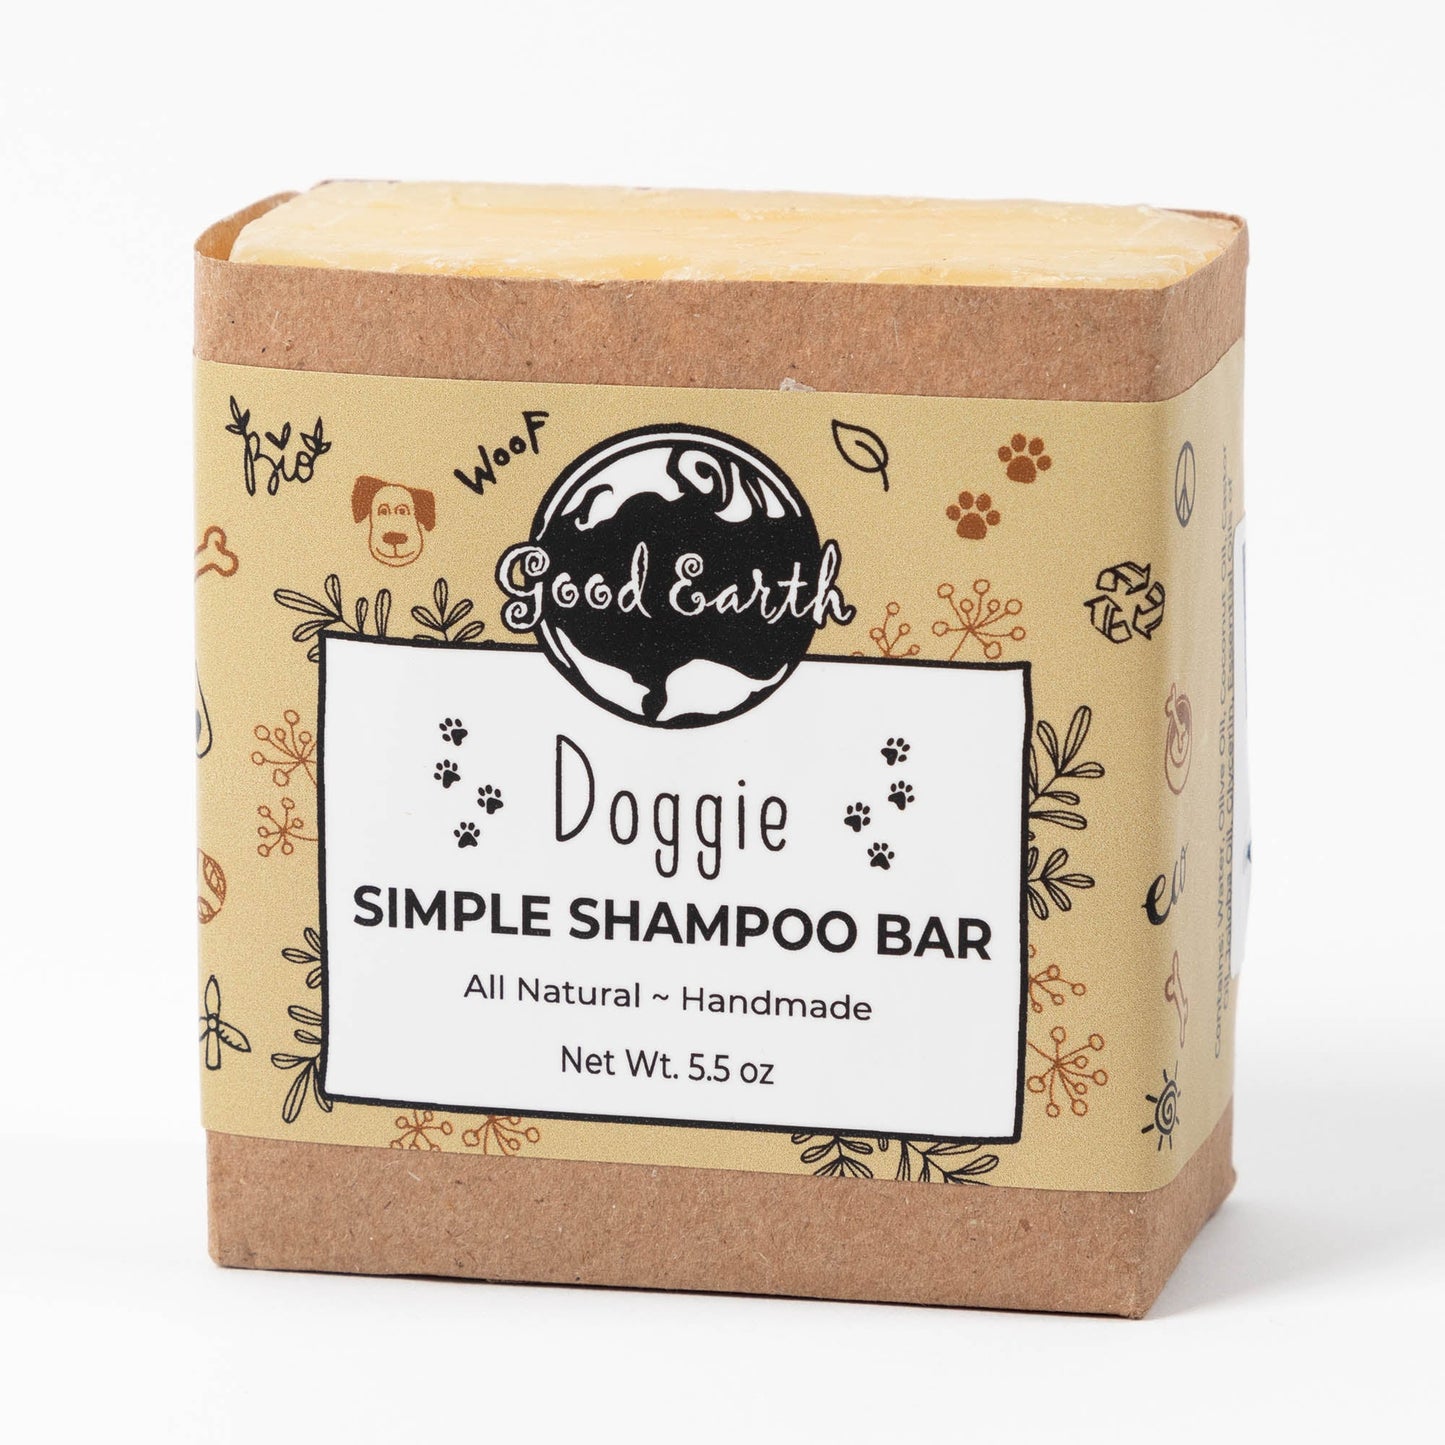 Good Earth Doggie Shampoo Bar